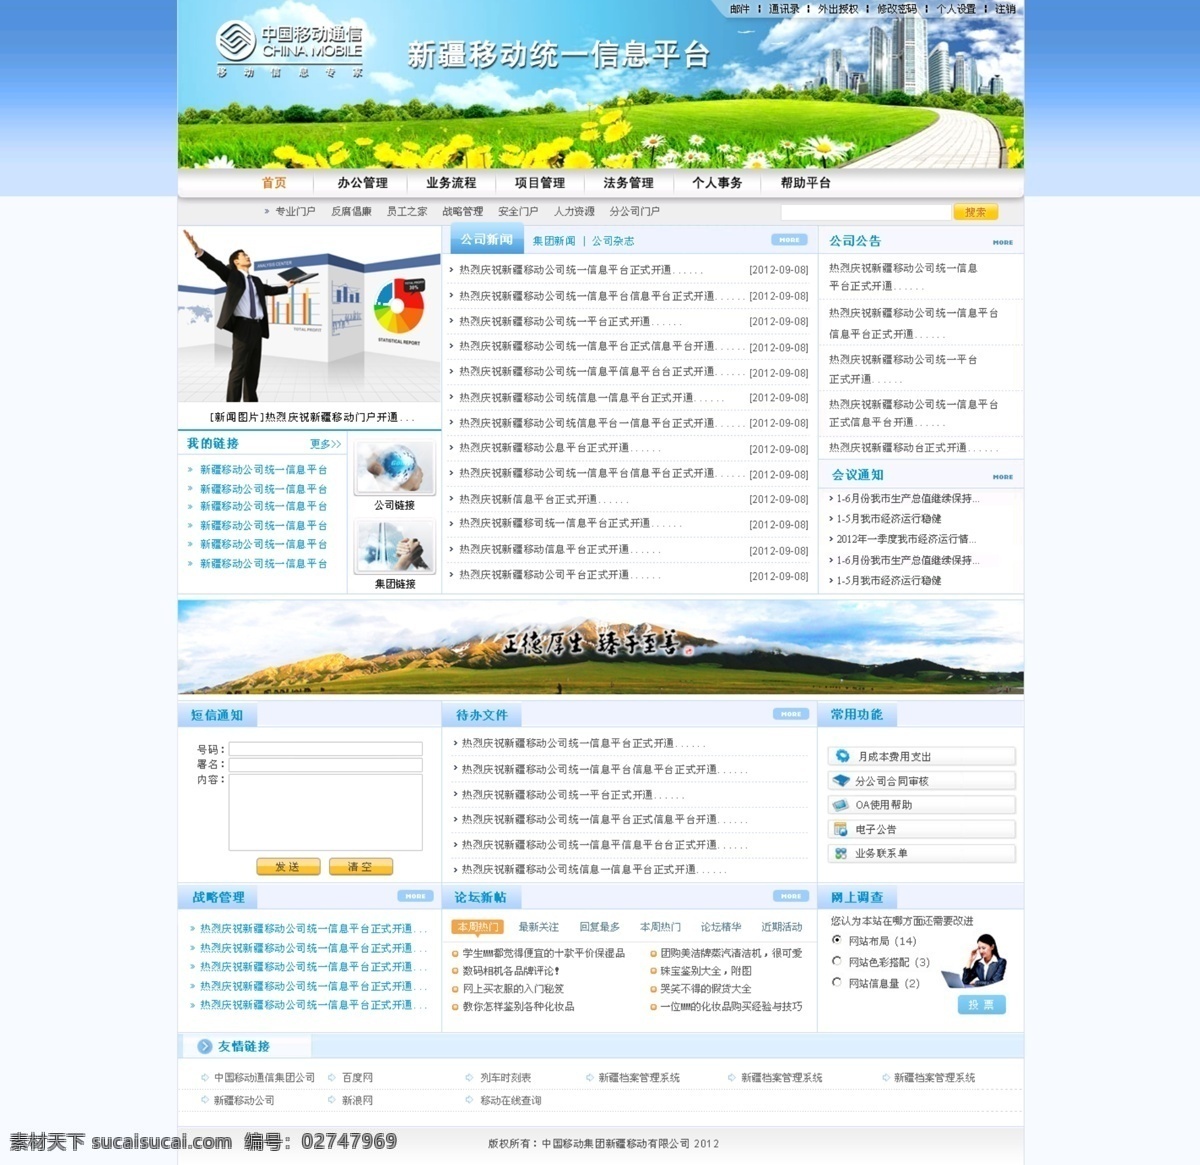 网页设计 模板 oa 草地 网页模板 网页设计模板 源文件 中文模版 主页 首页 portal 网页素材